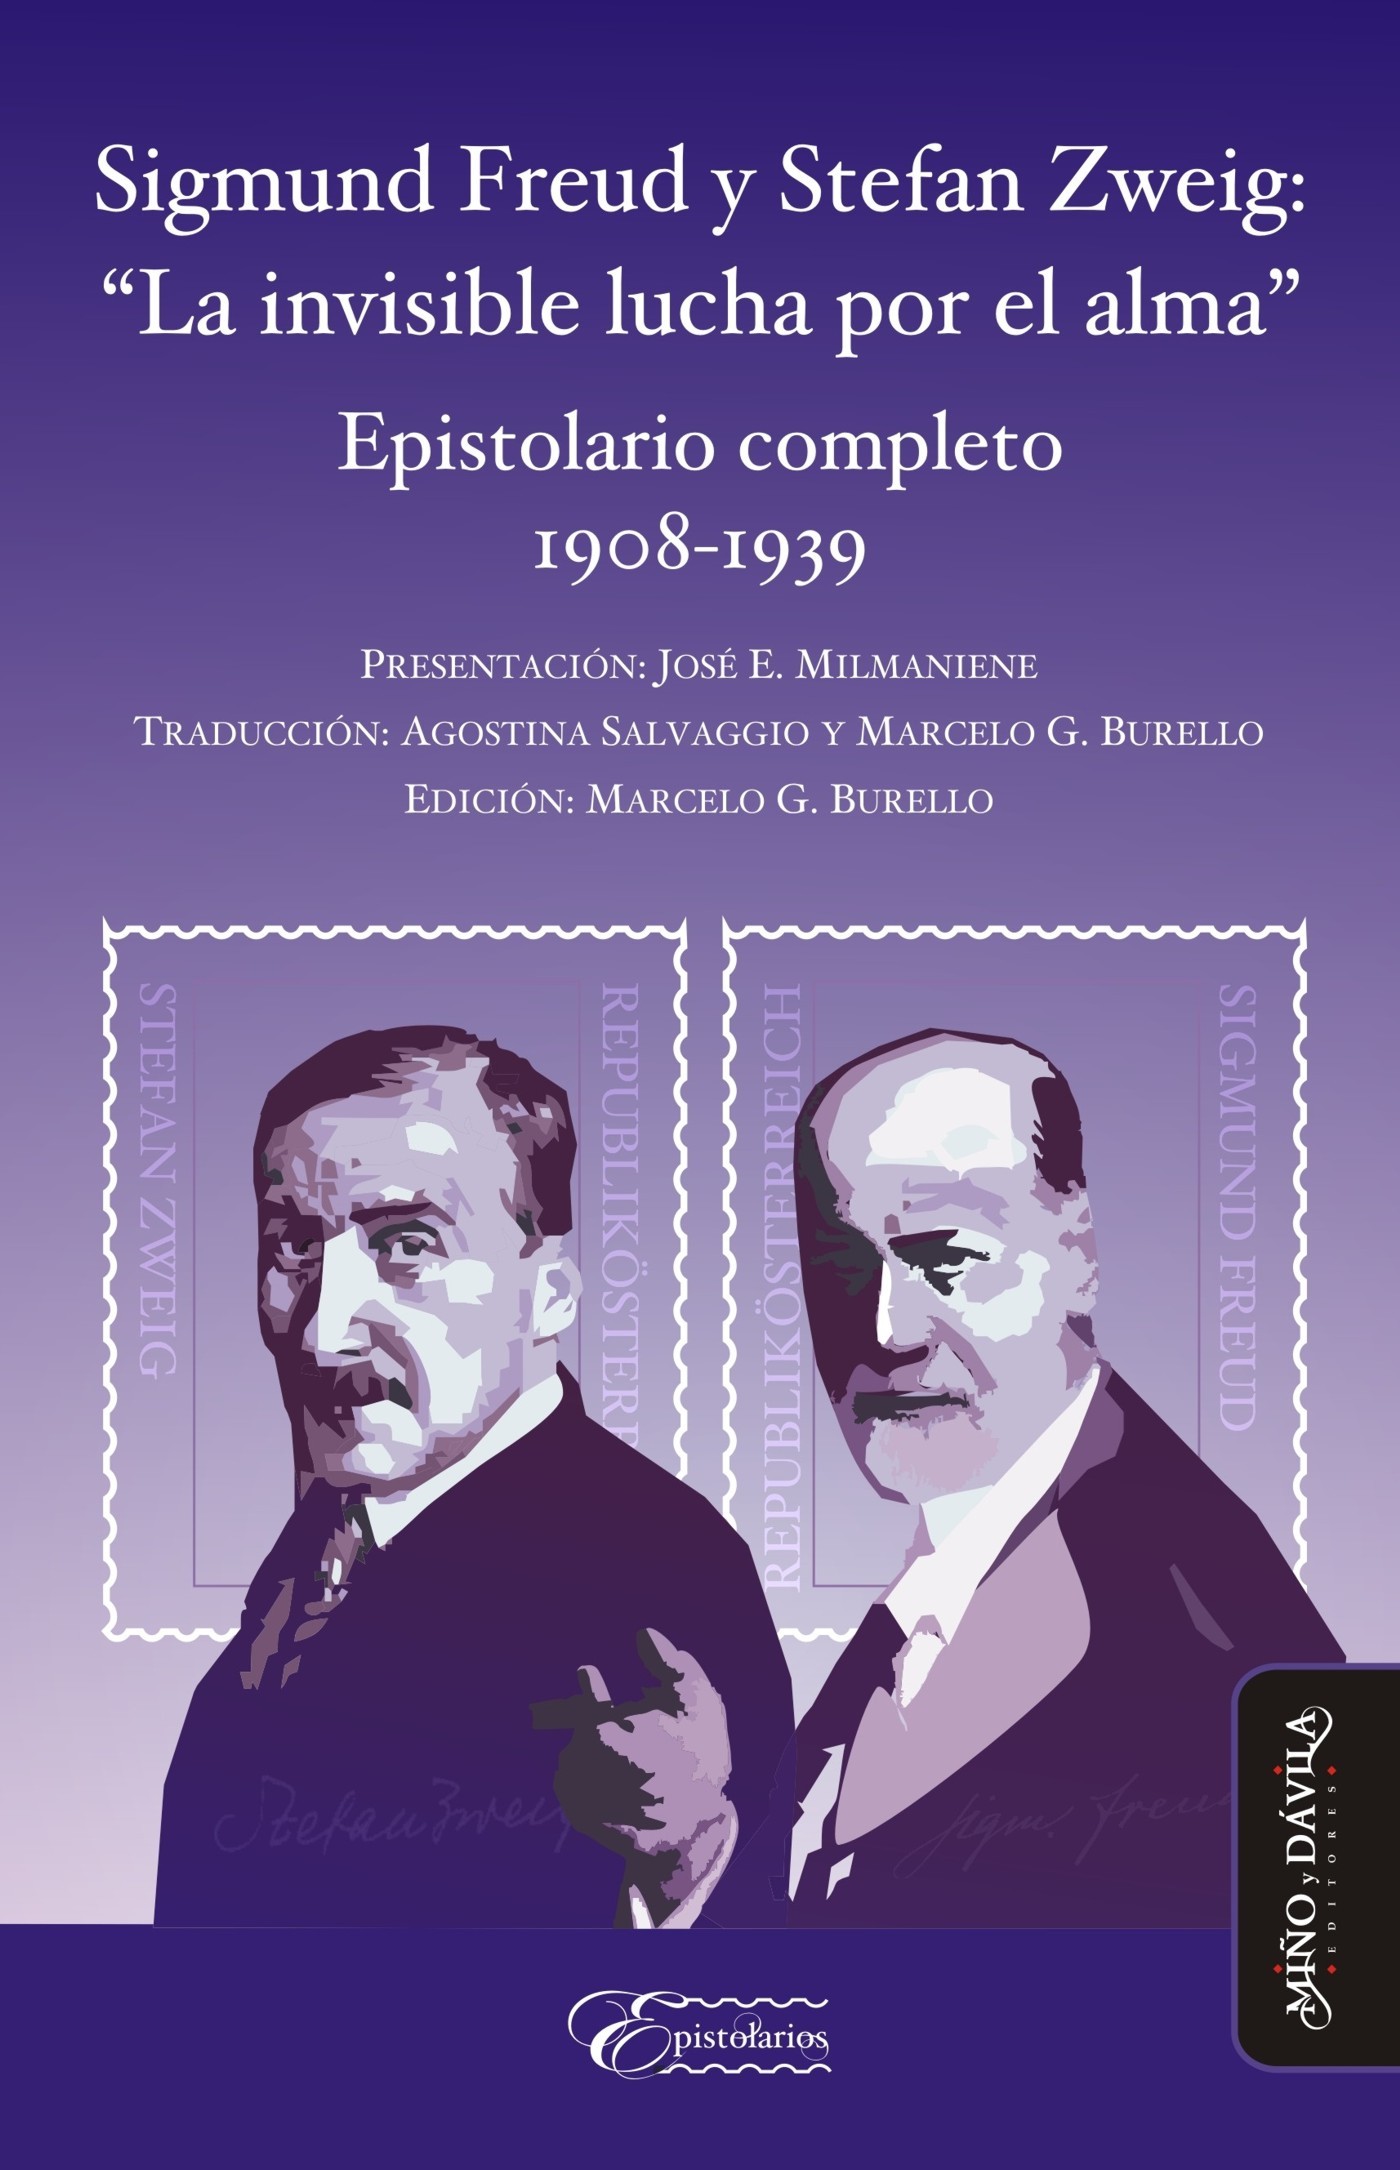 Sigmund Freud y Stefan Zweig: "La invisible lucha por el alma". 9788416467334